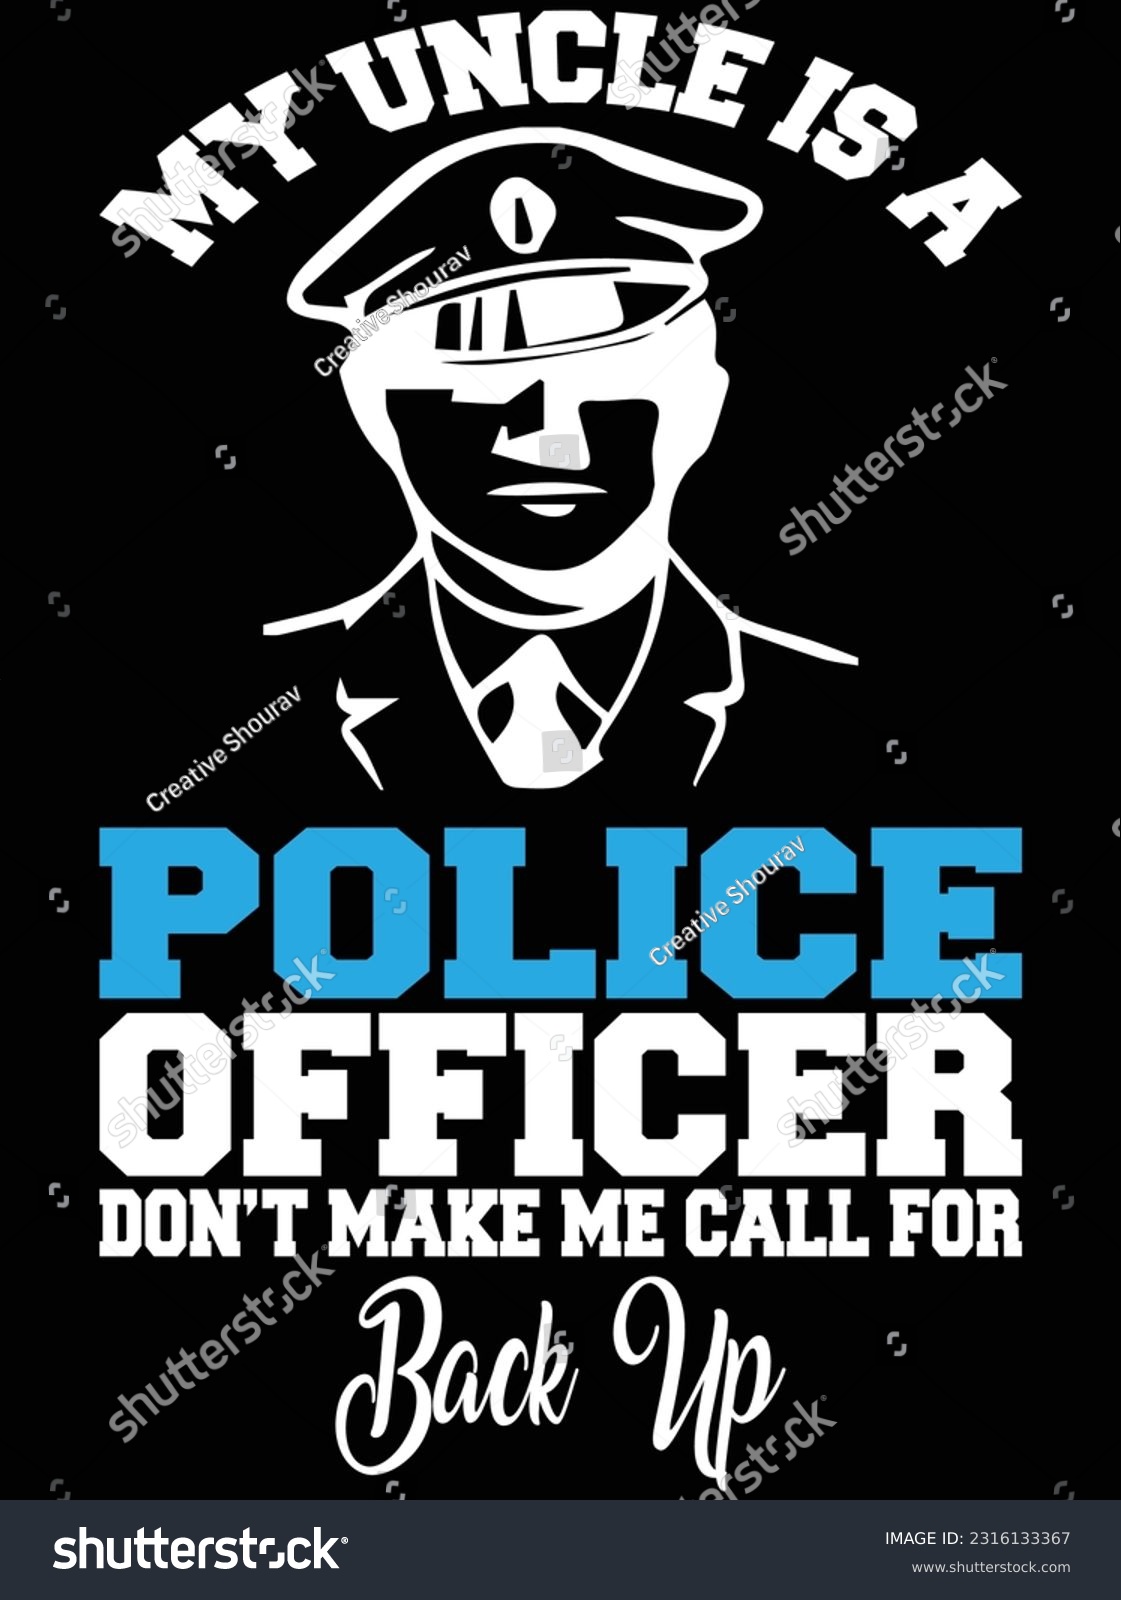 SVG of My uncle is a police officer don't make vector art design, eps file. design file for t-shirt. SVG, EPS cuttable design file svg